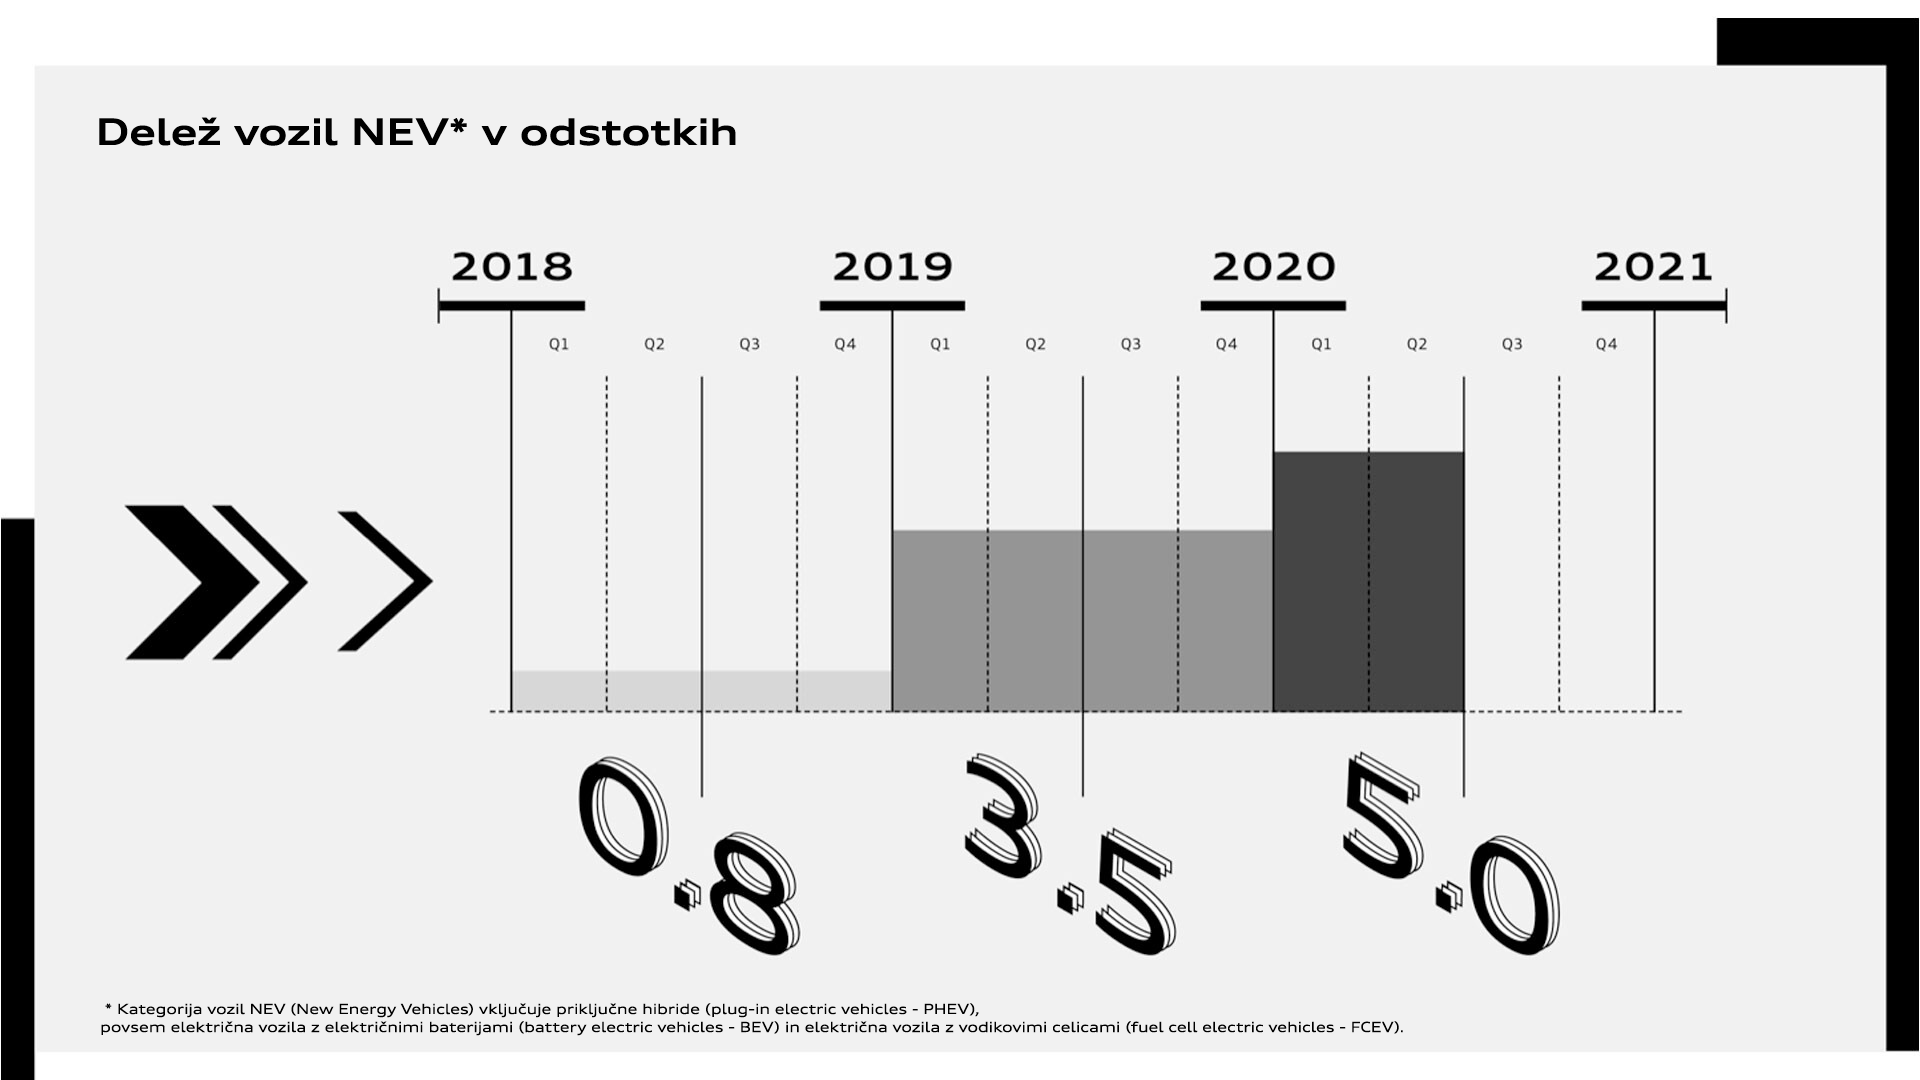 Audi bo še naprej povečeval globalni delež vozil na novo energijo (New Energy Vehicles - NEV).